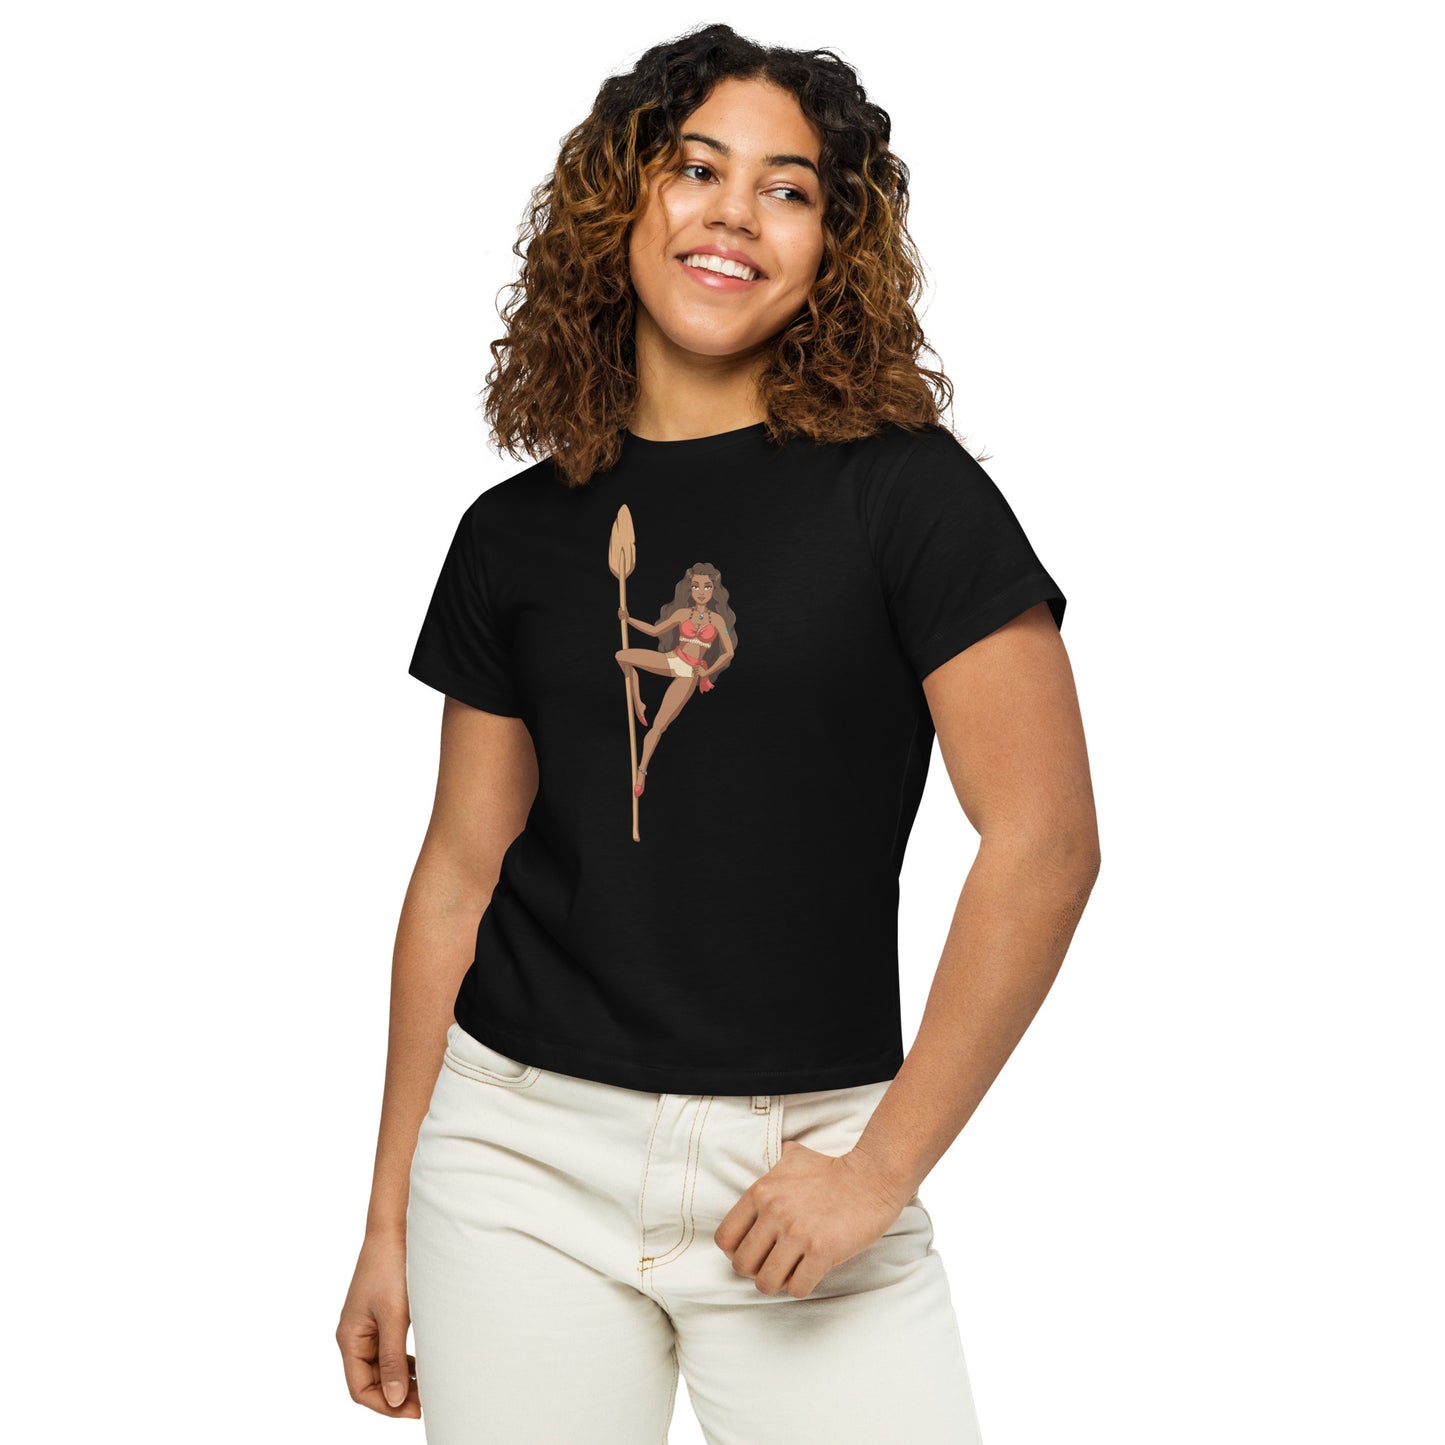 Cupid - Women’s high-waisted t-shirt